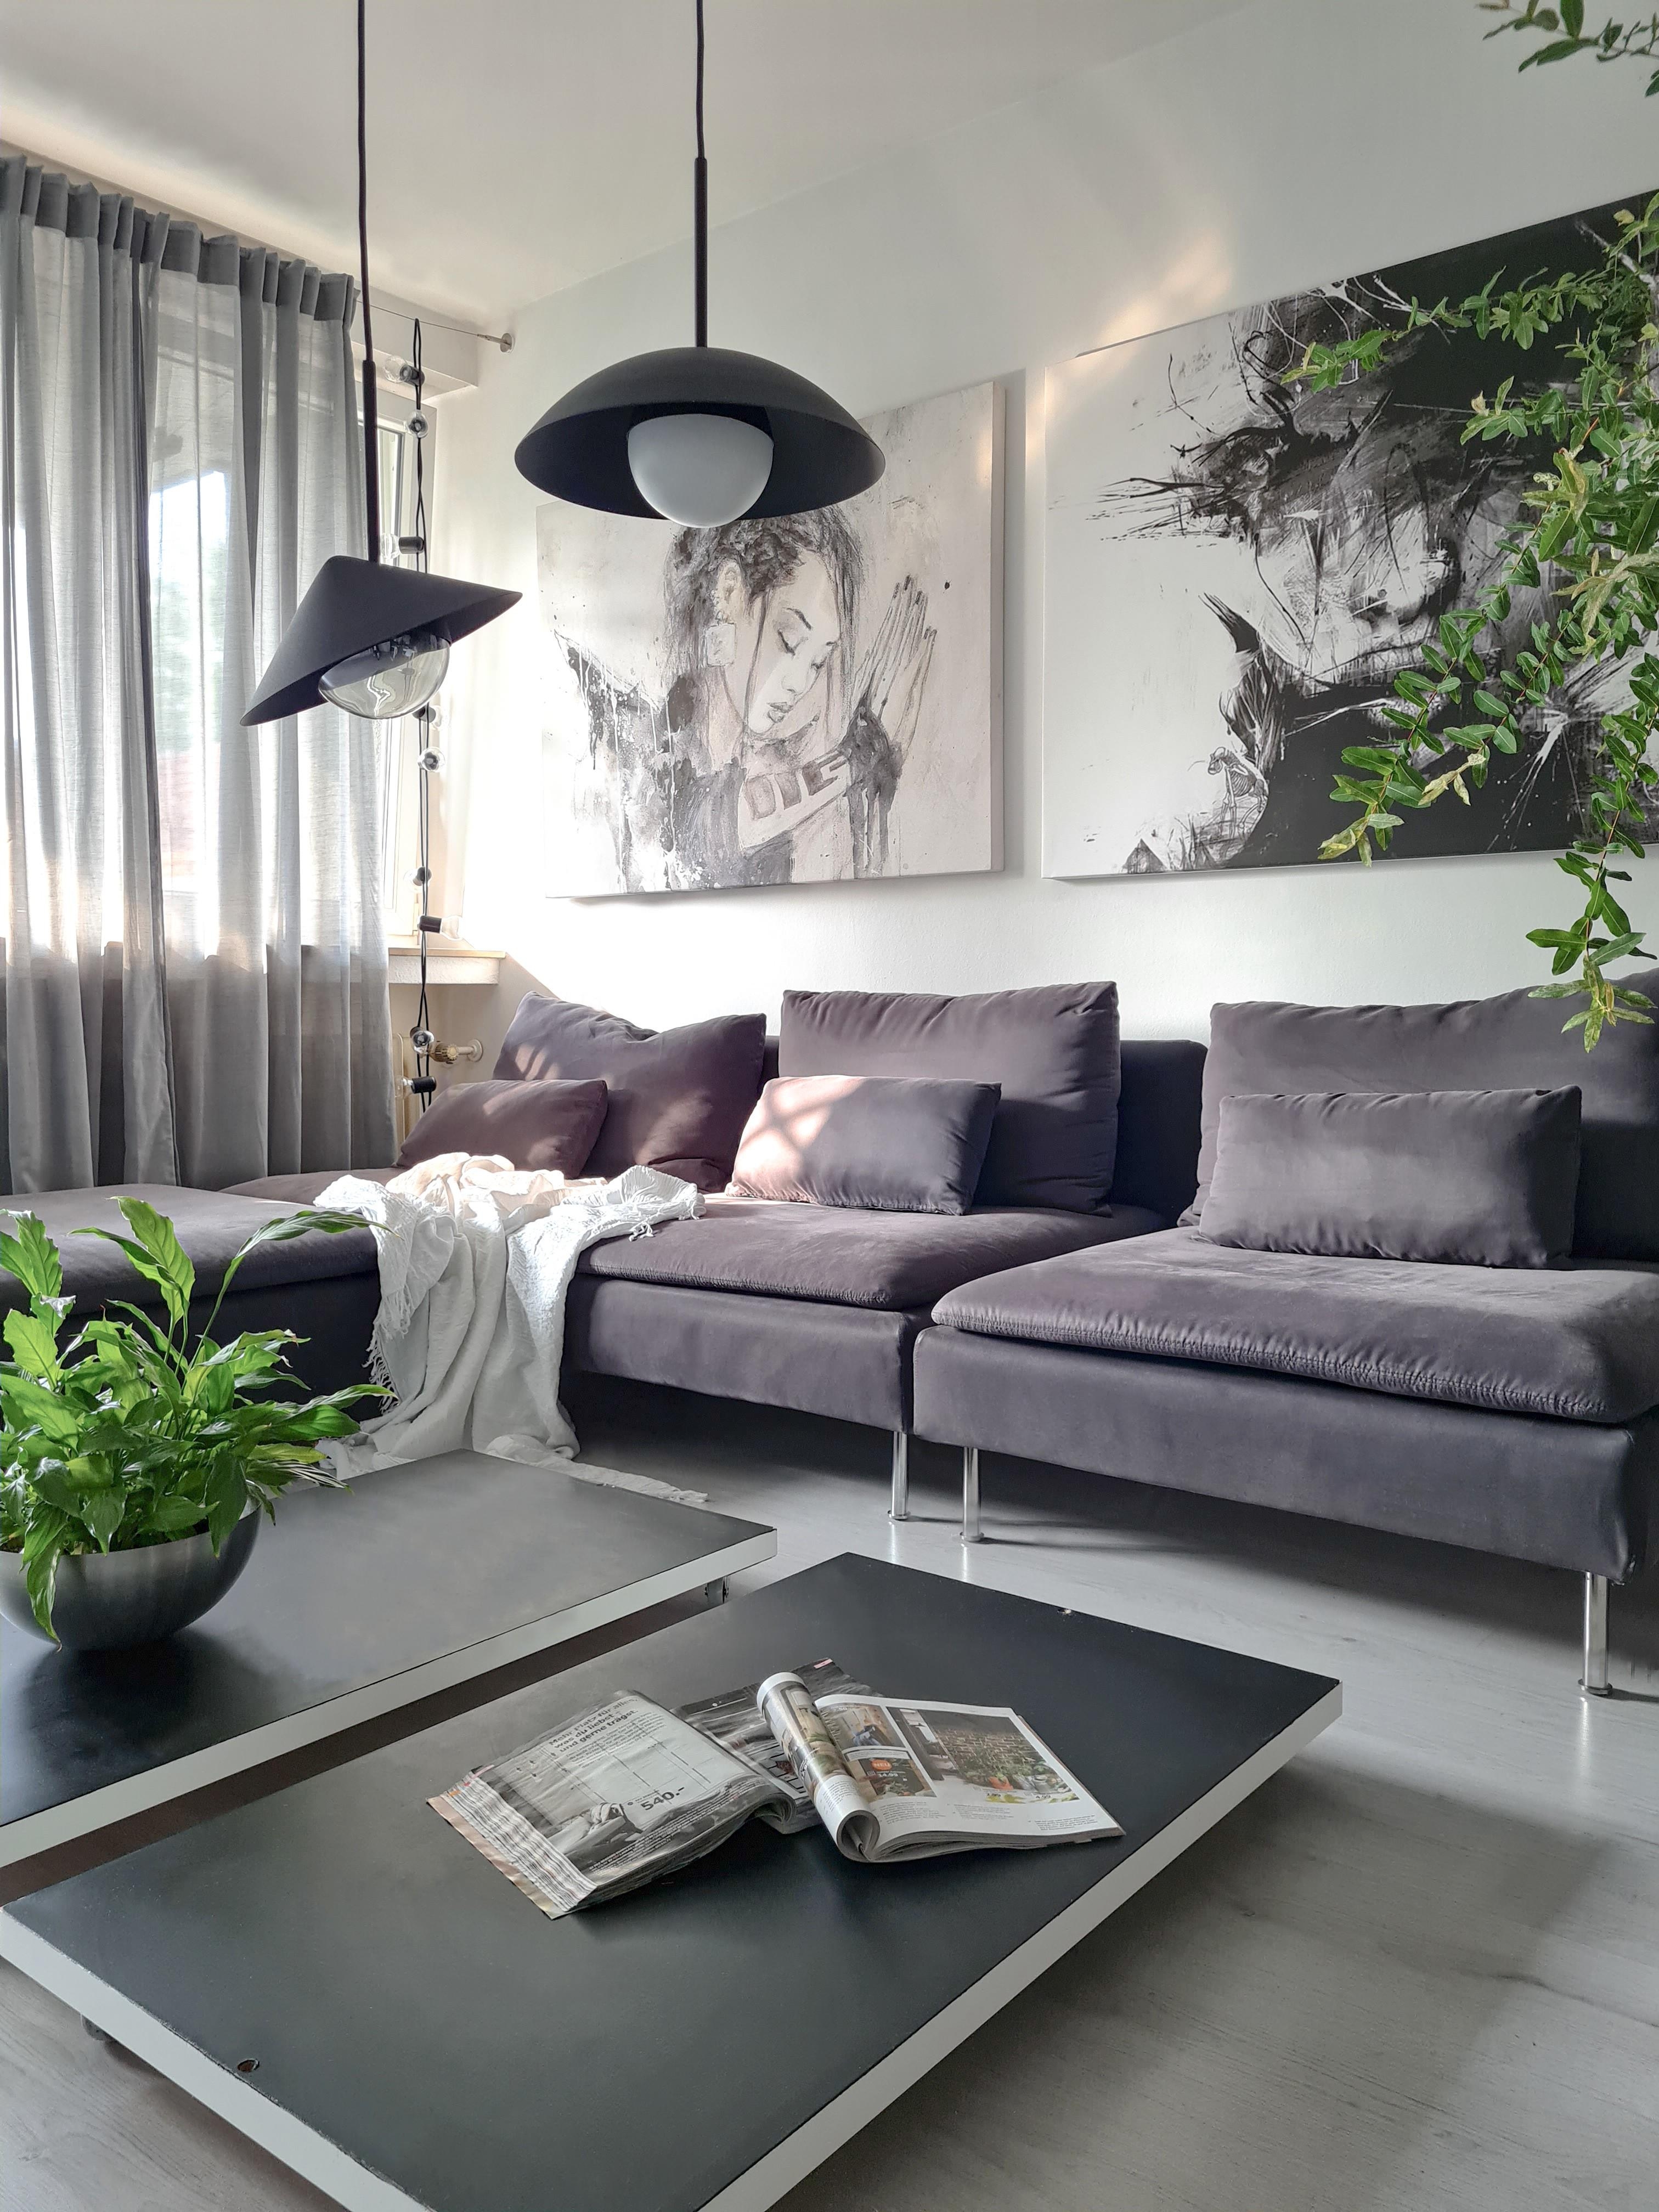 Golden autumn ☀️🍁
#wohnzimmer #couch #couchtisch #bilderwand #lampen #pflanzen #interior